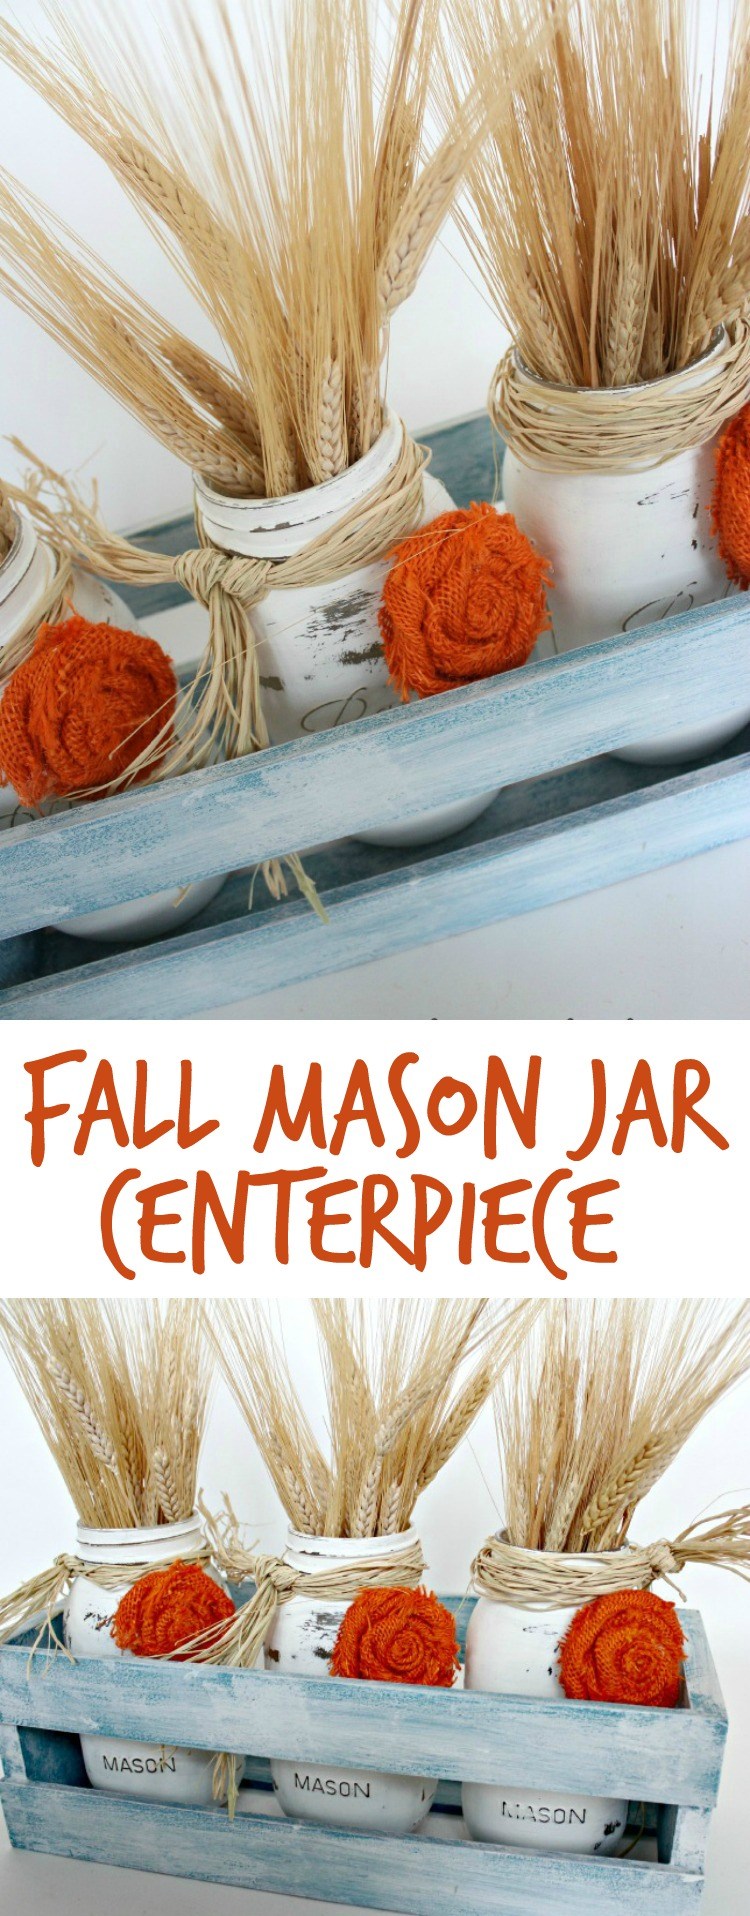 Fall Mason Jar Centerpiece